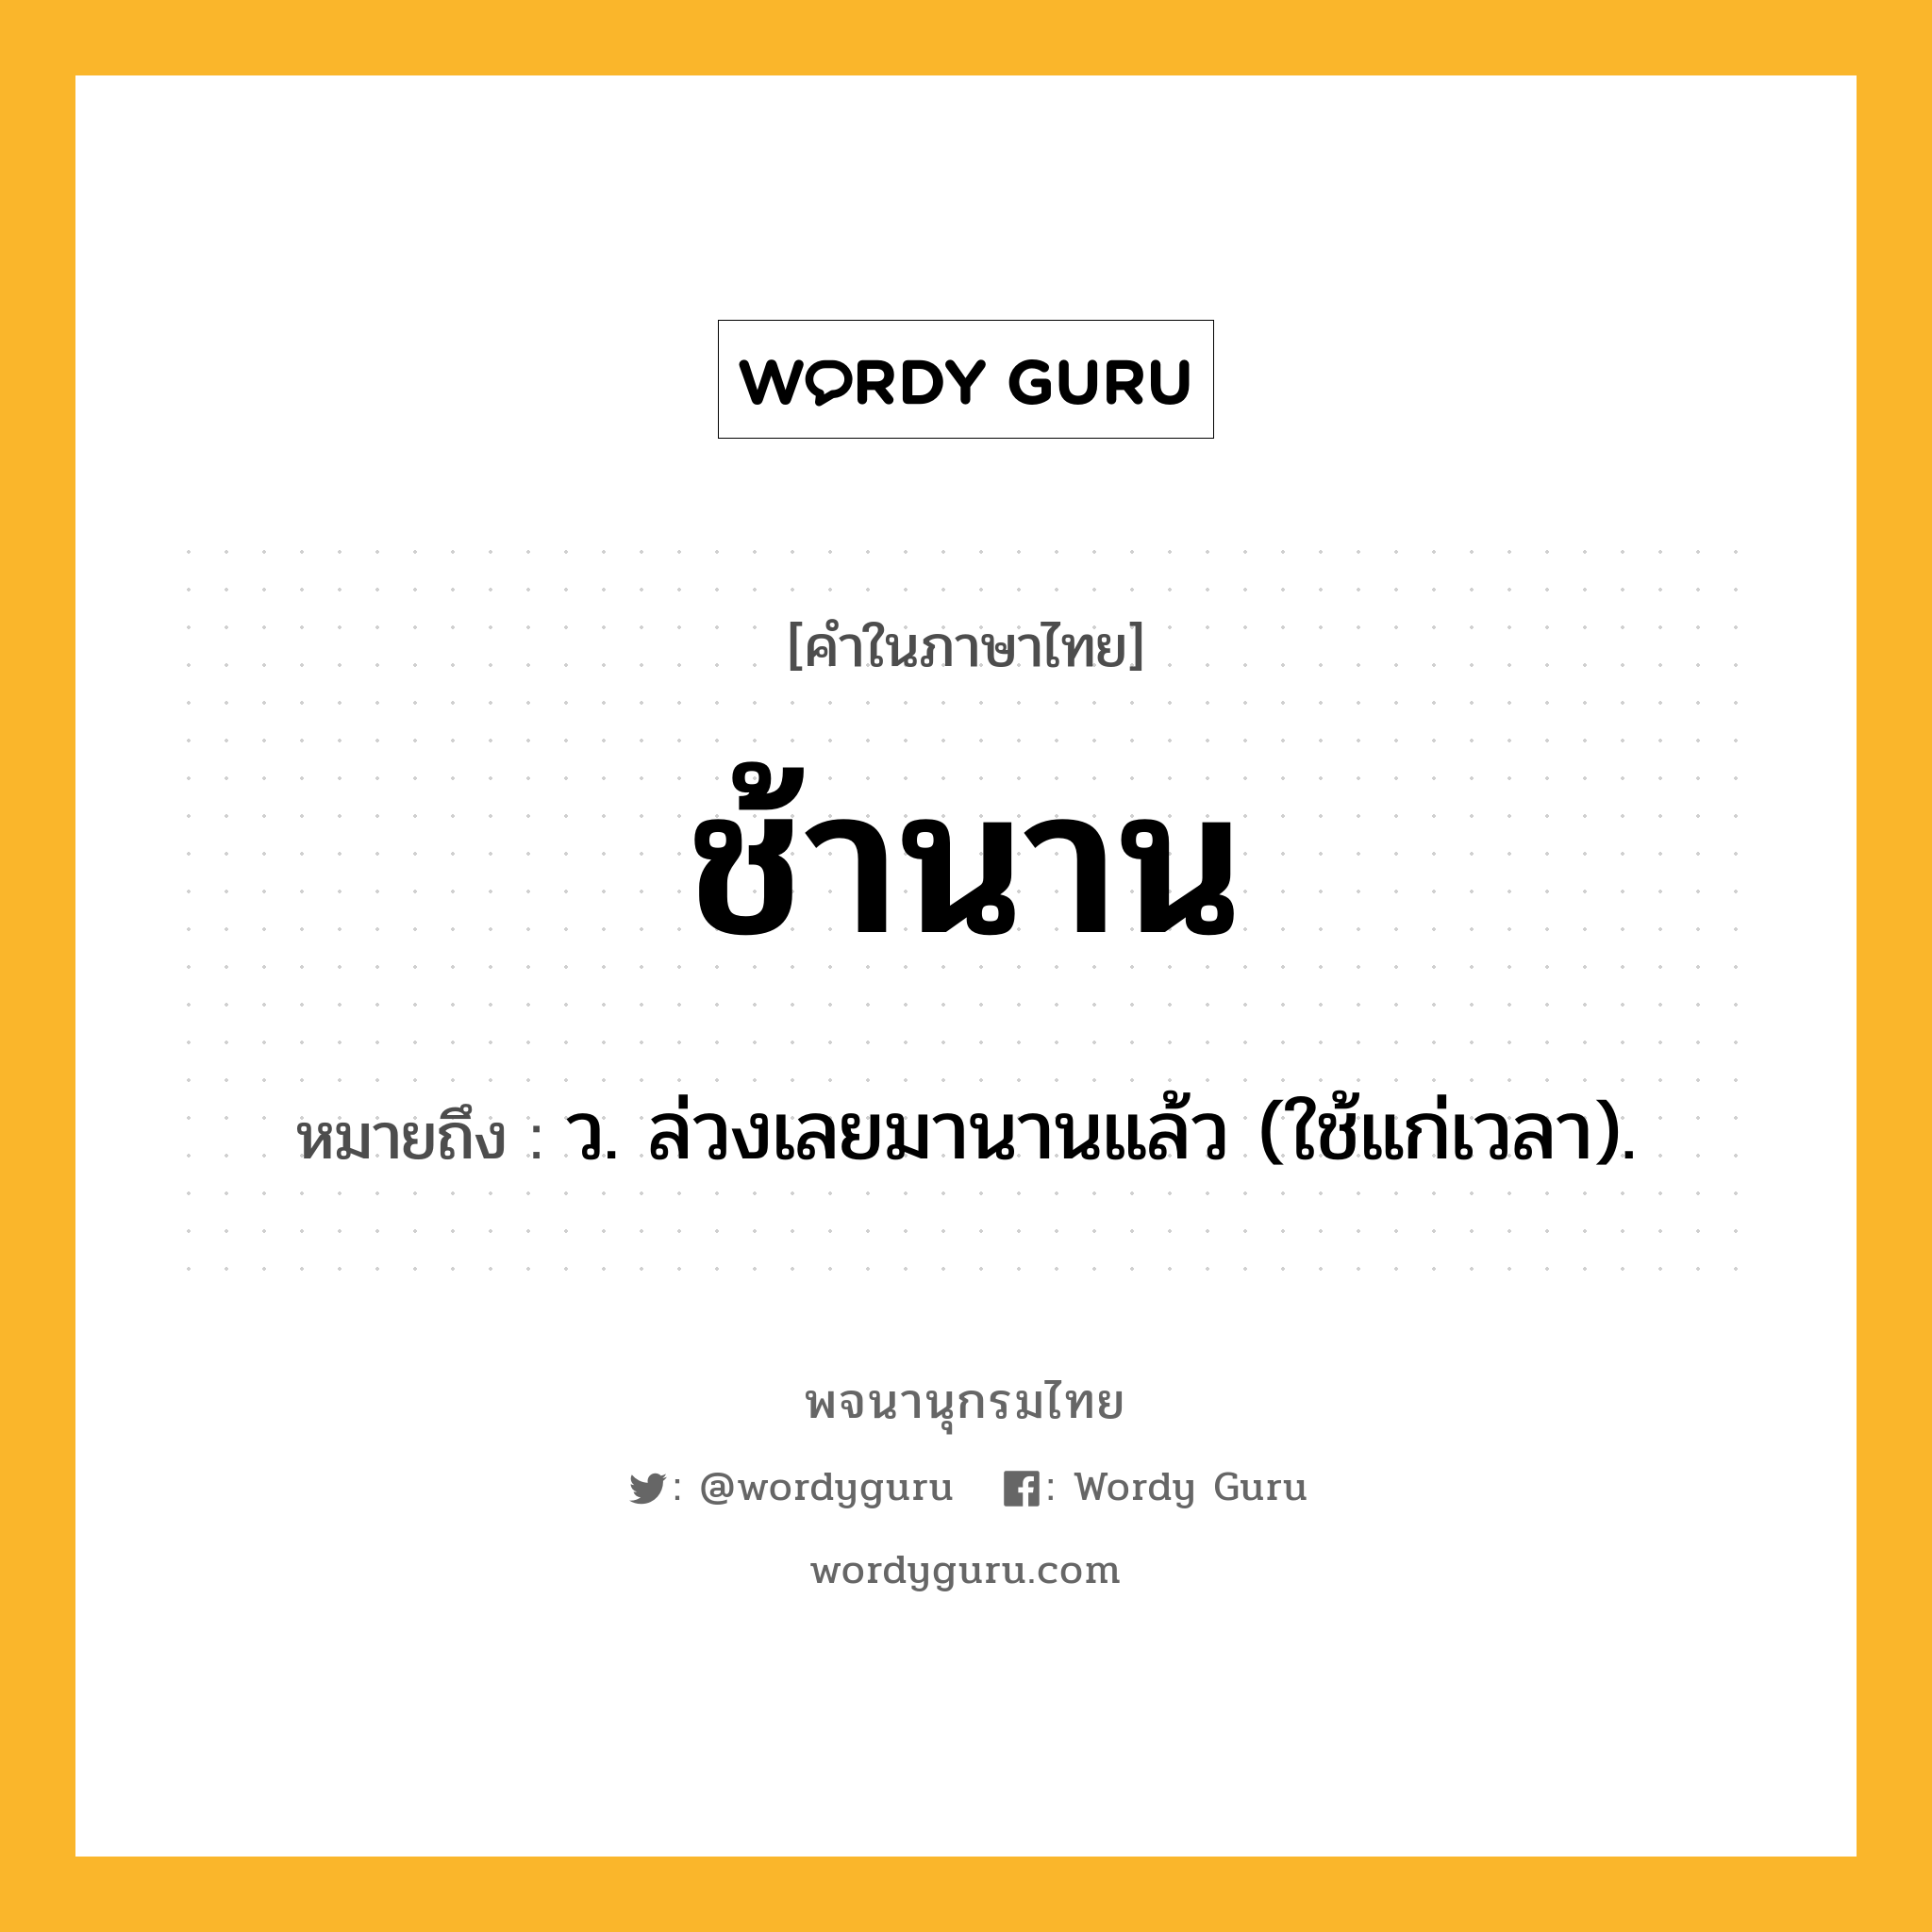 ช้านาน ความหมาย หมายถึงอะไร?, คำในภาษาไทย ช้านาน หมายถึง ว. ล่วงเลยมานานแล้ว (ใช้แก่เวลา).